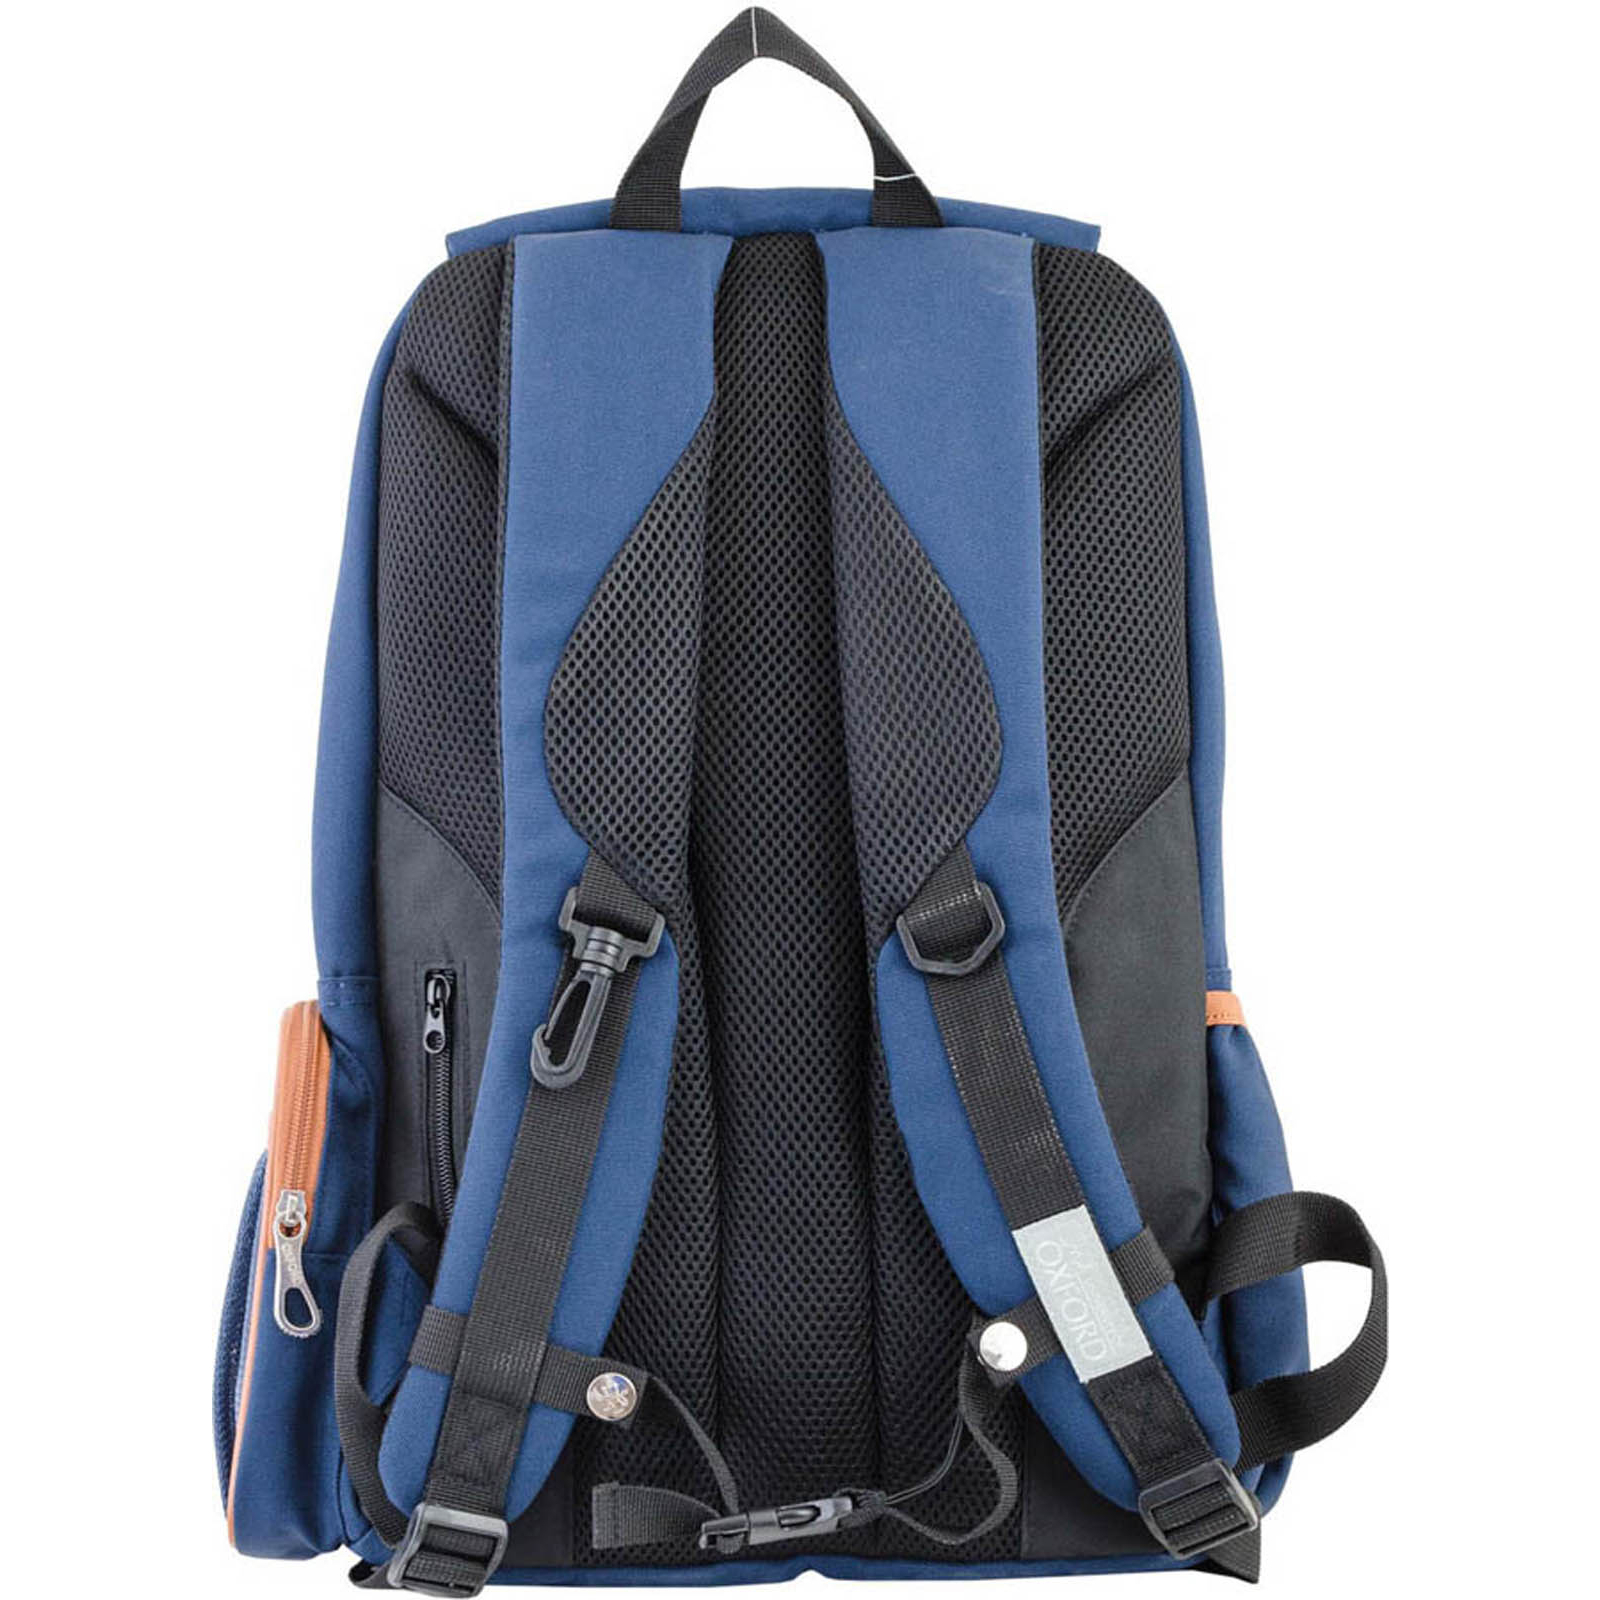 Рюкзак шкільний Yes OX 293 синій (554035) зображення 4